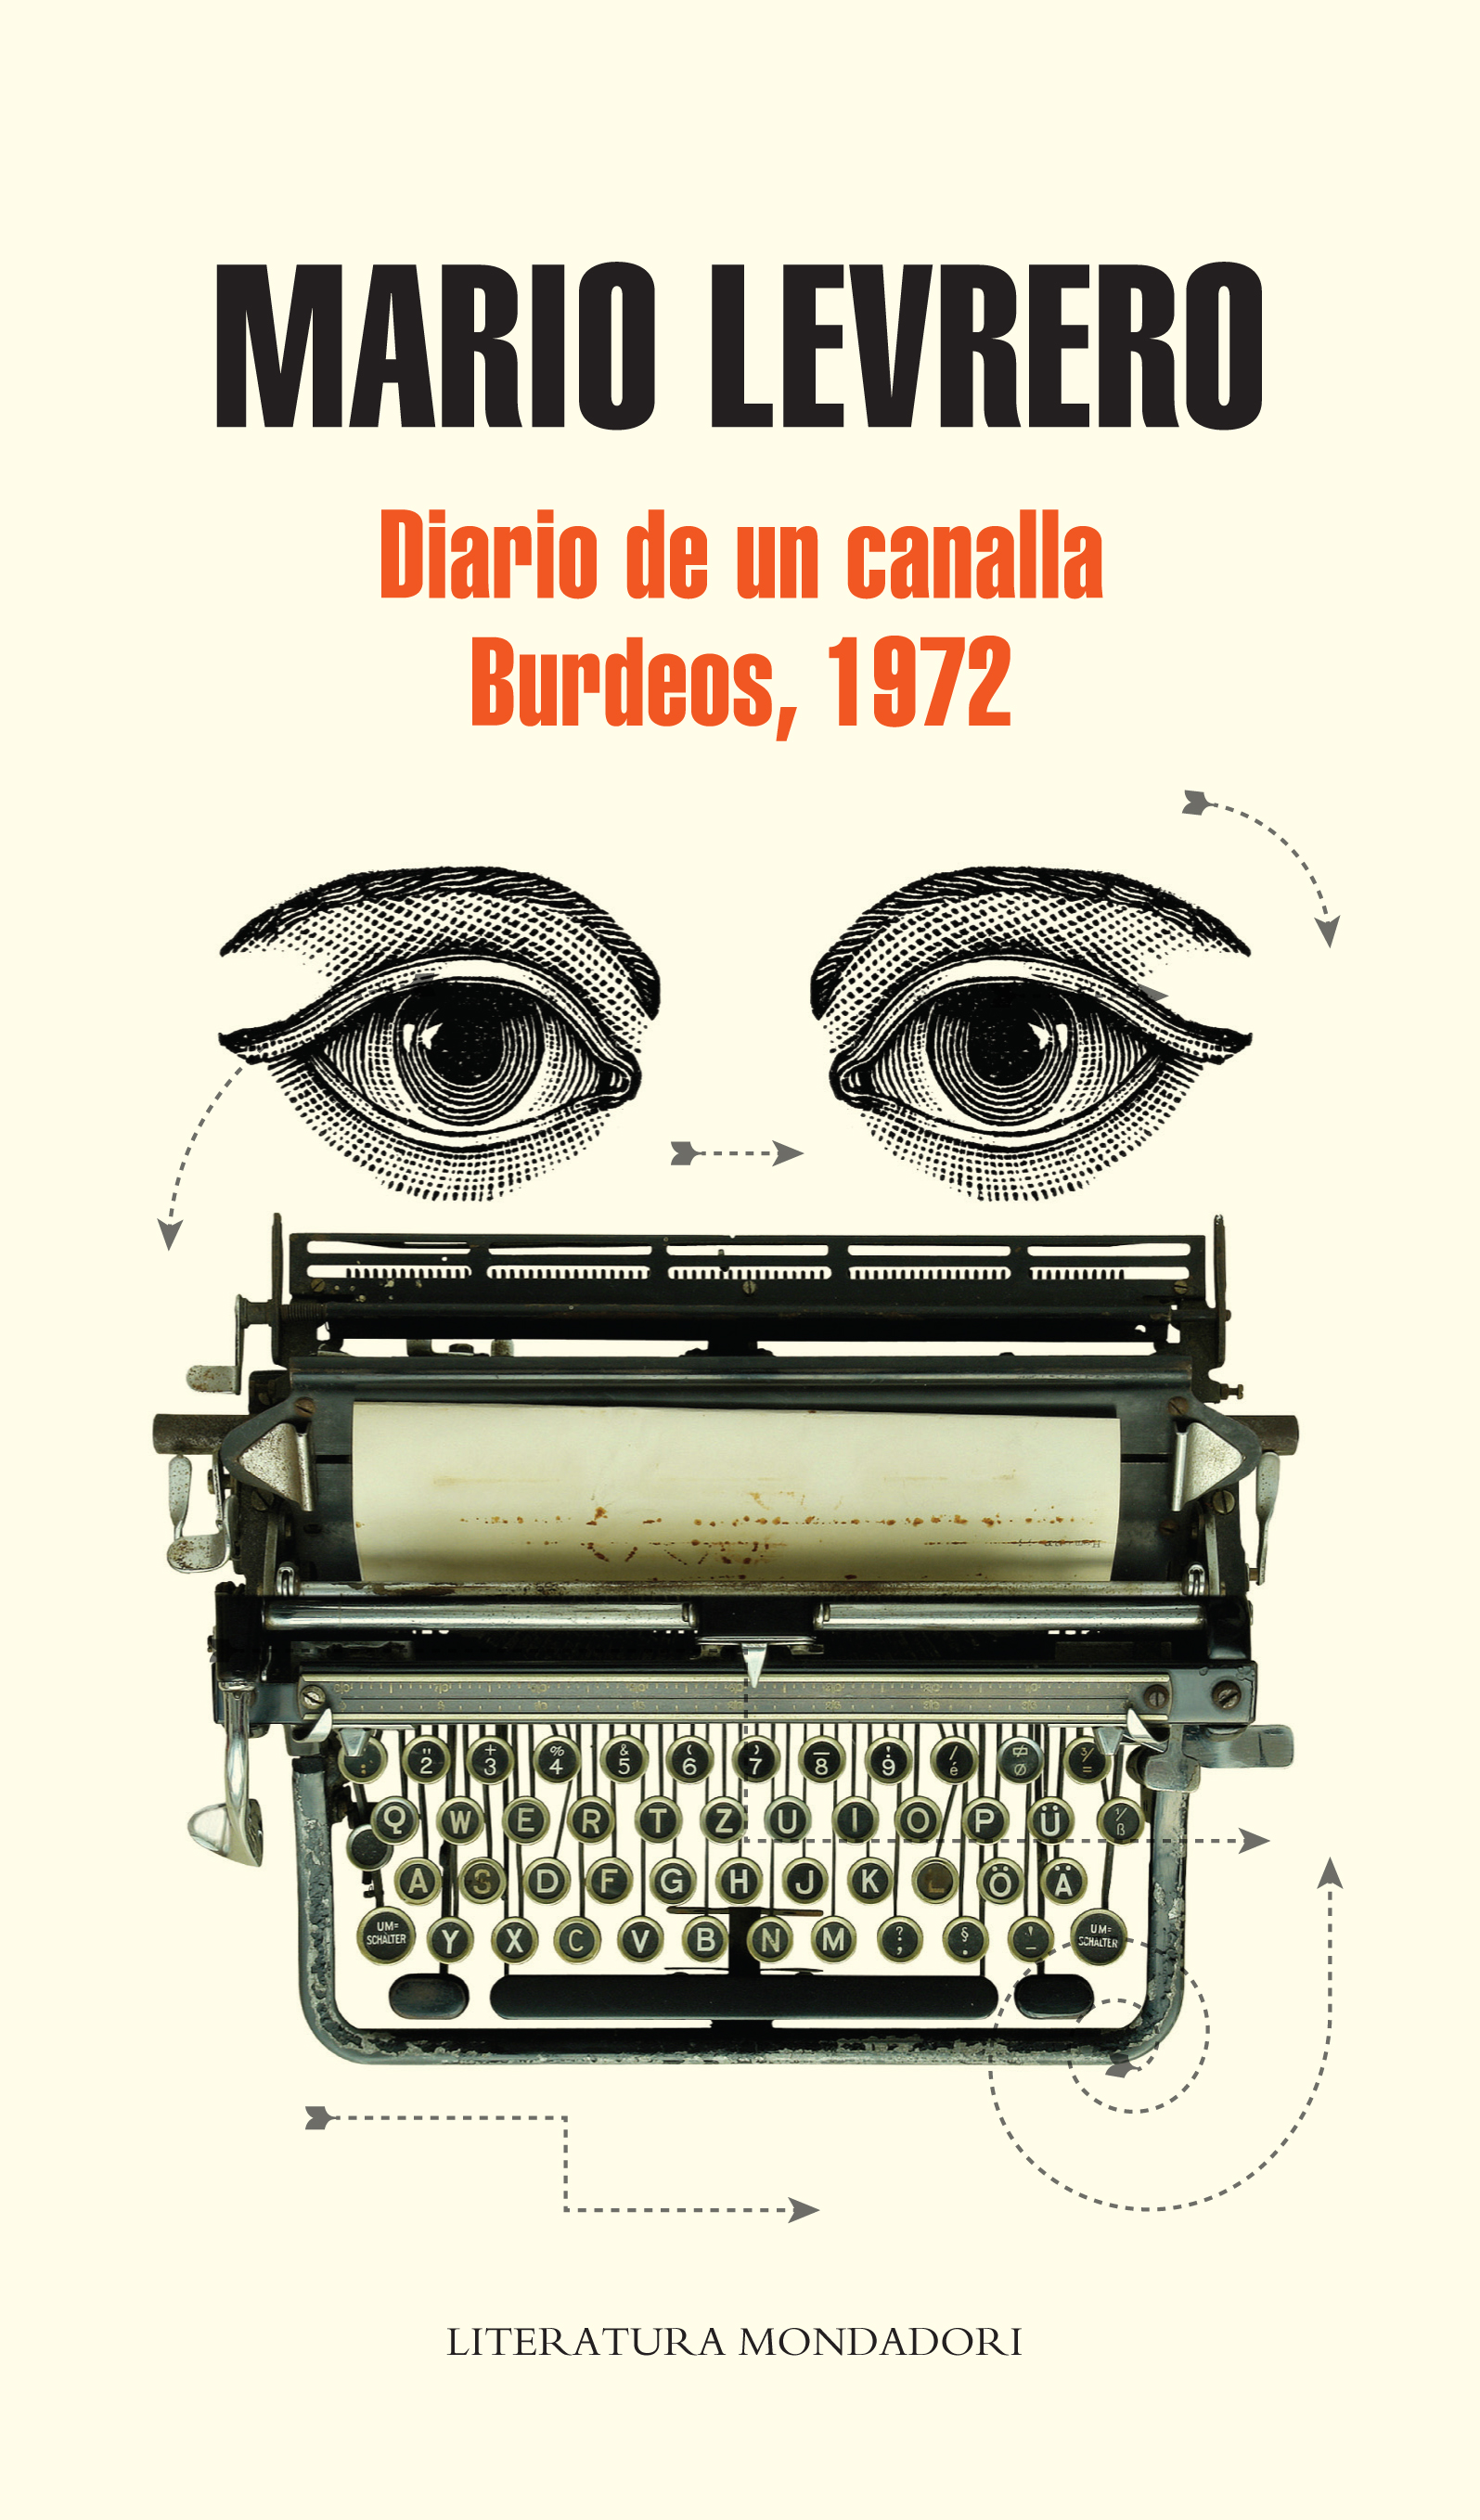 Diary of a swine and Bordeaux, 1972 (Diario de un canalla /Burdeos 1972)